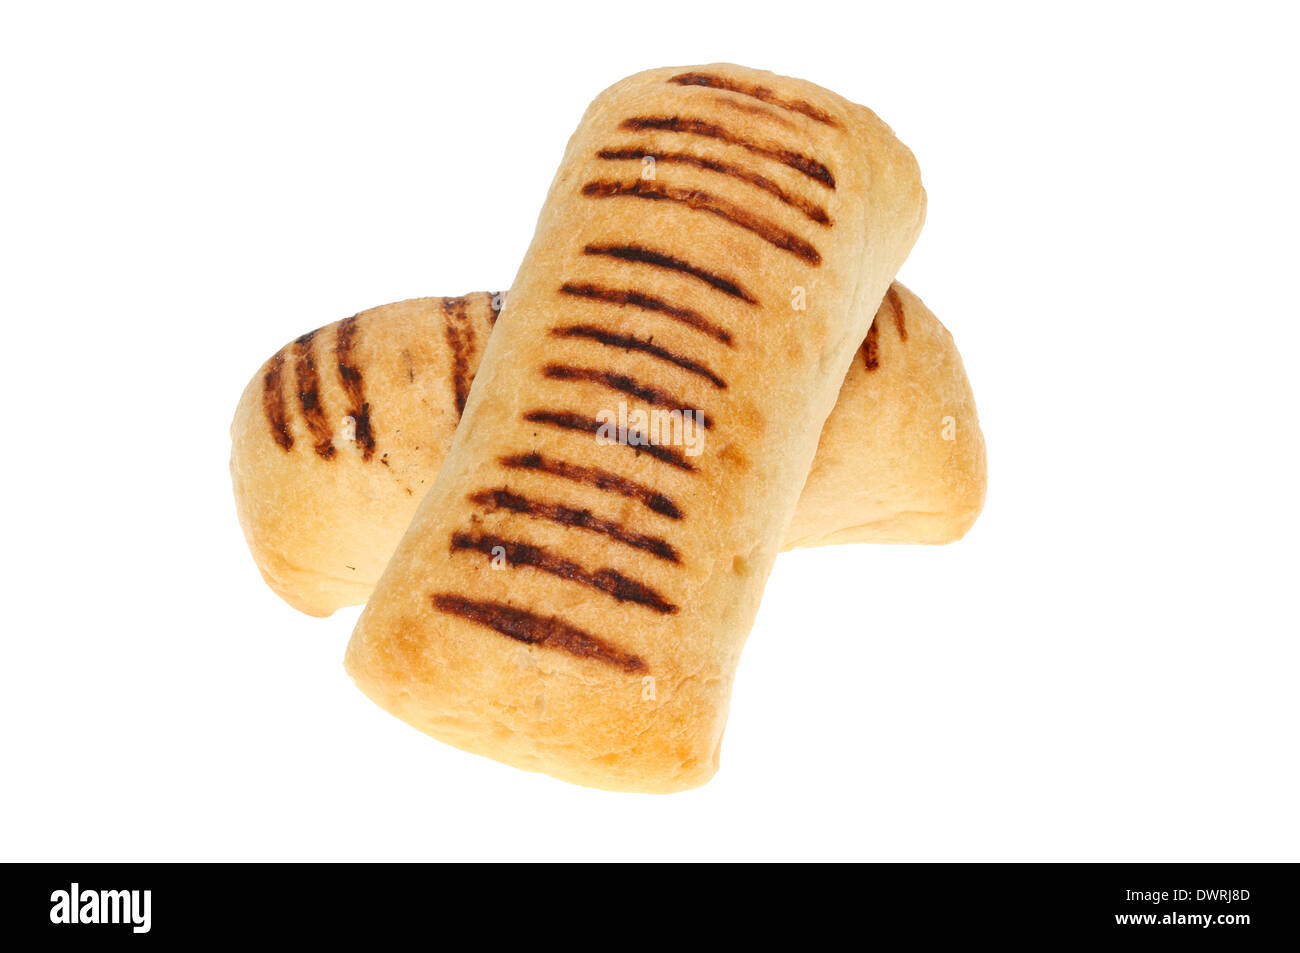 Deux petits pains panini isolés contre white Banque D'Images